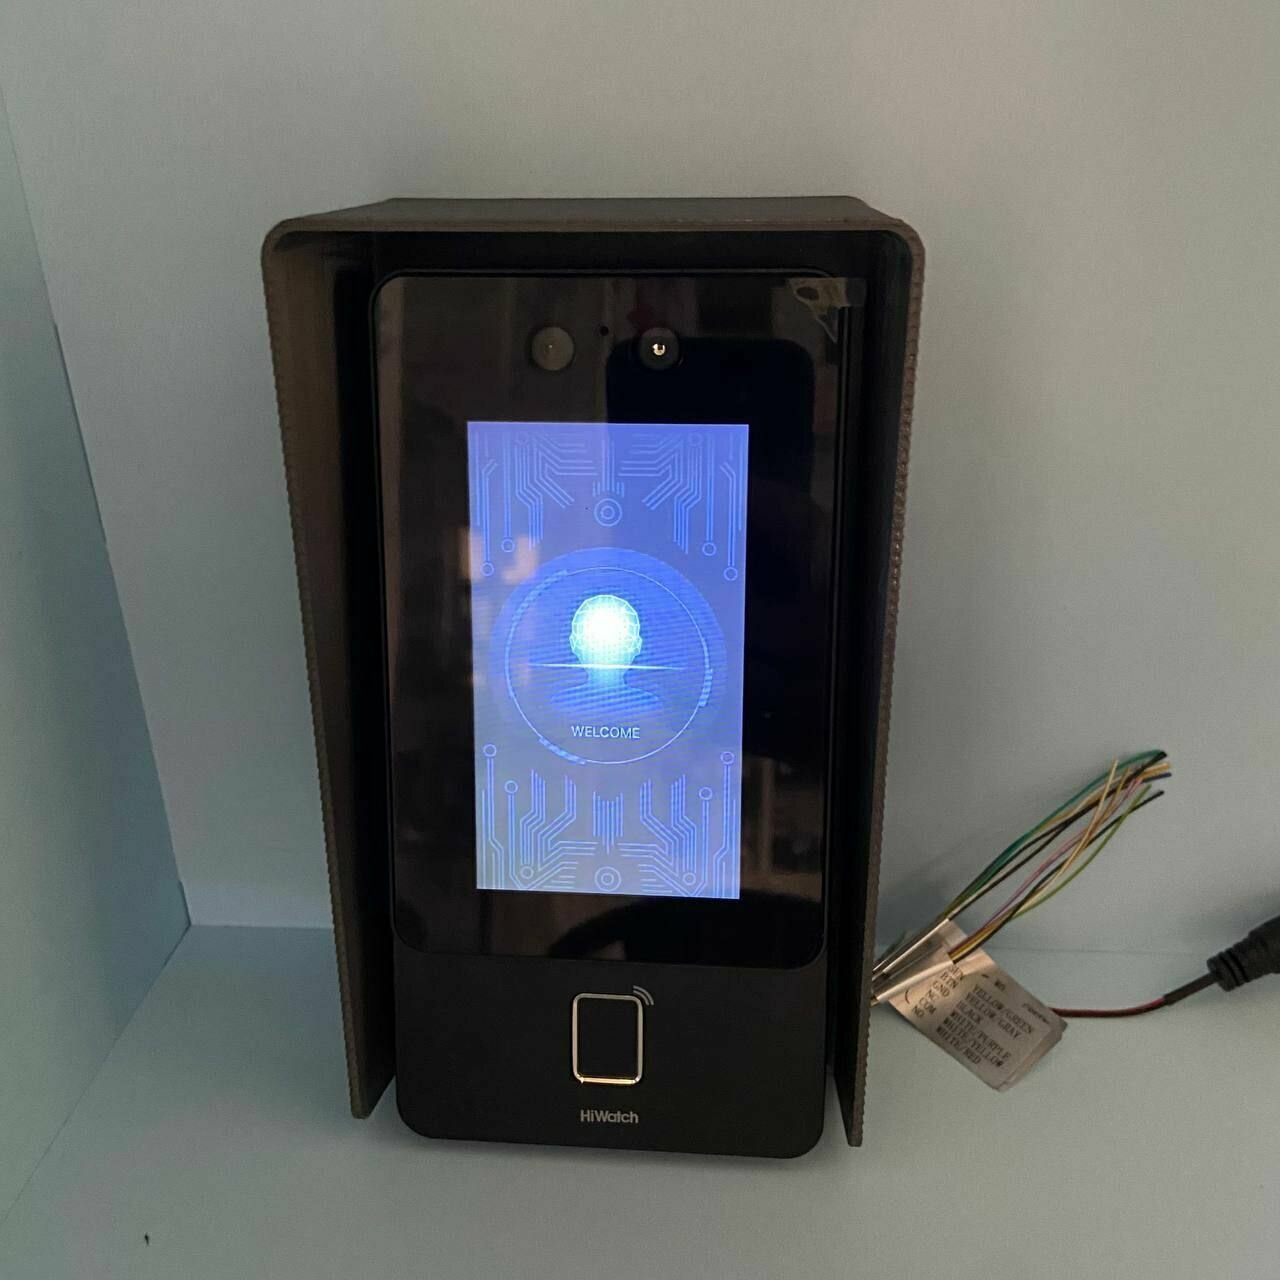 Защитный козырек для терминал доступа с распознаванием лиц и считывателем отпечатков пальцев Hikvision HiWatch (серый) 3D печать